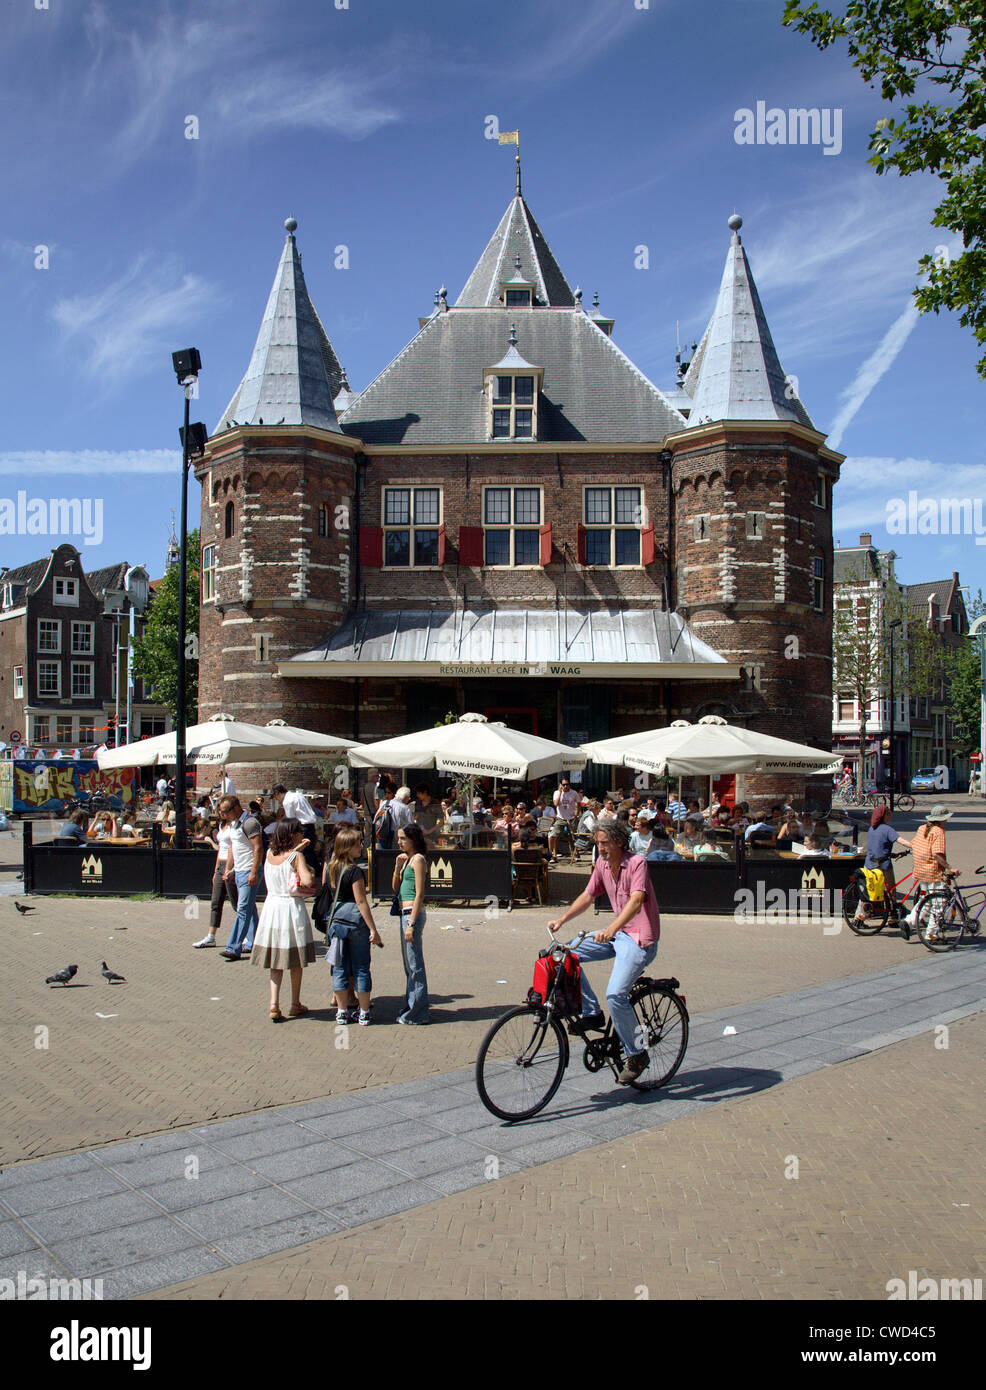 Amsterdam, Nieuwmarkt, De Waag Stock Photo